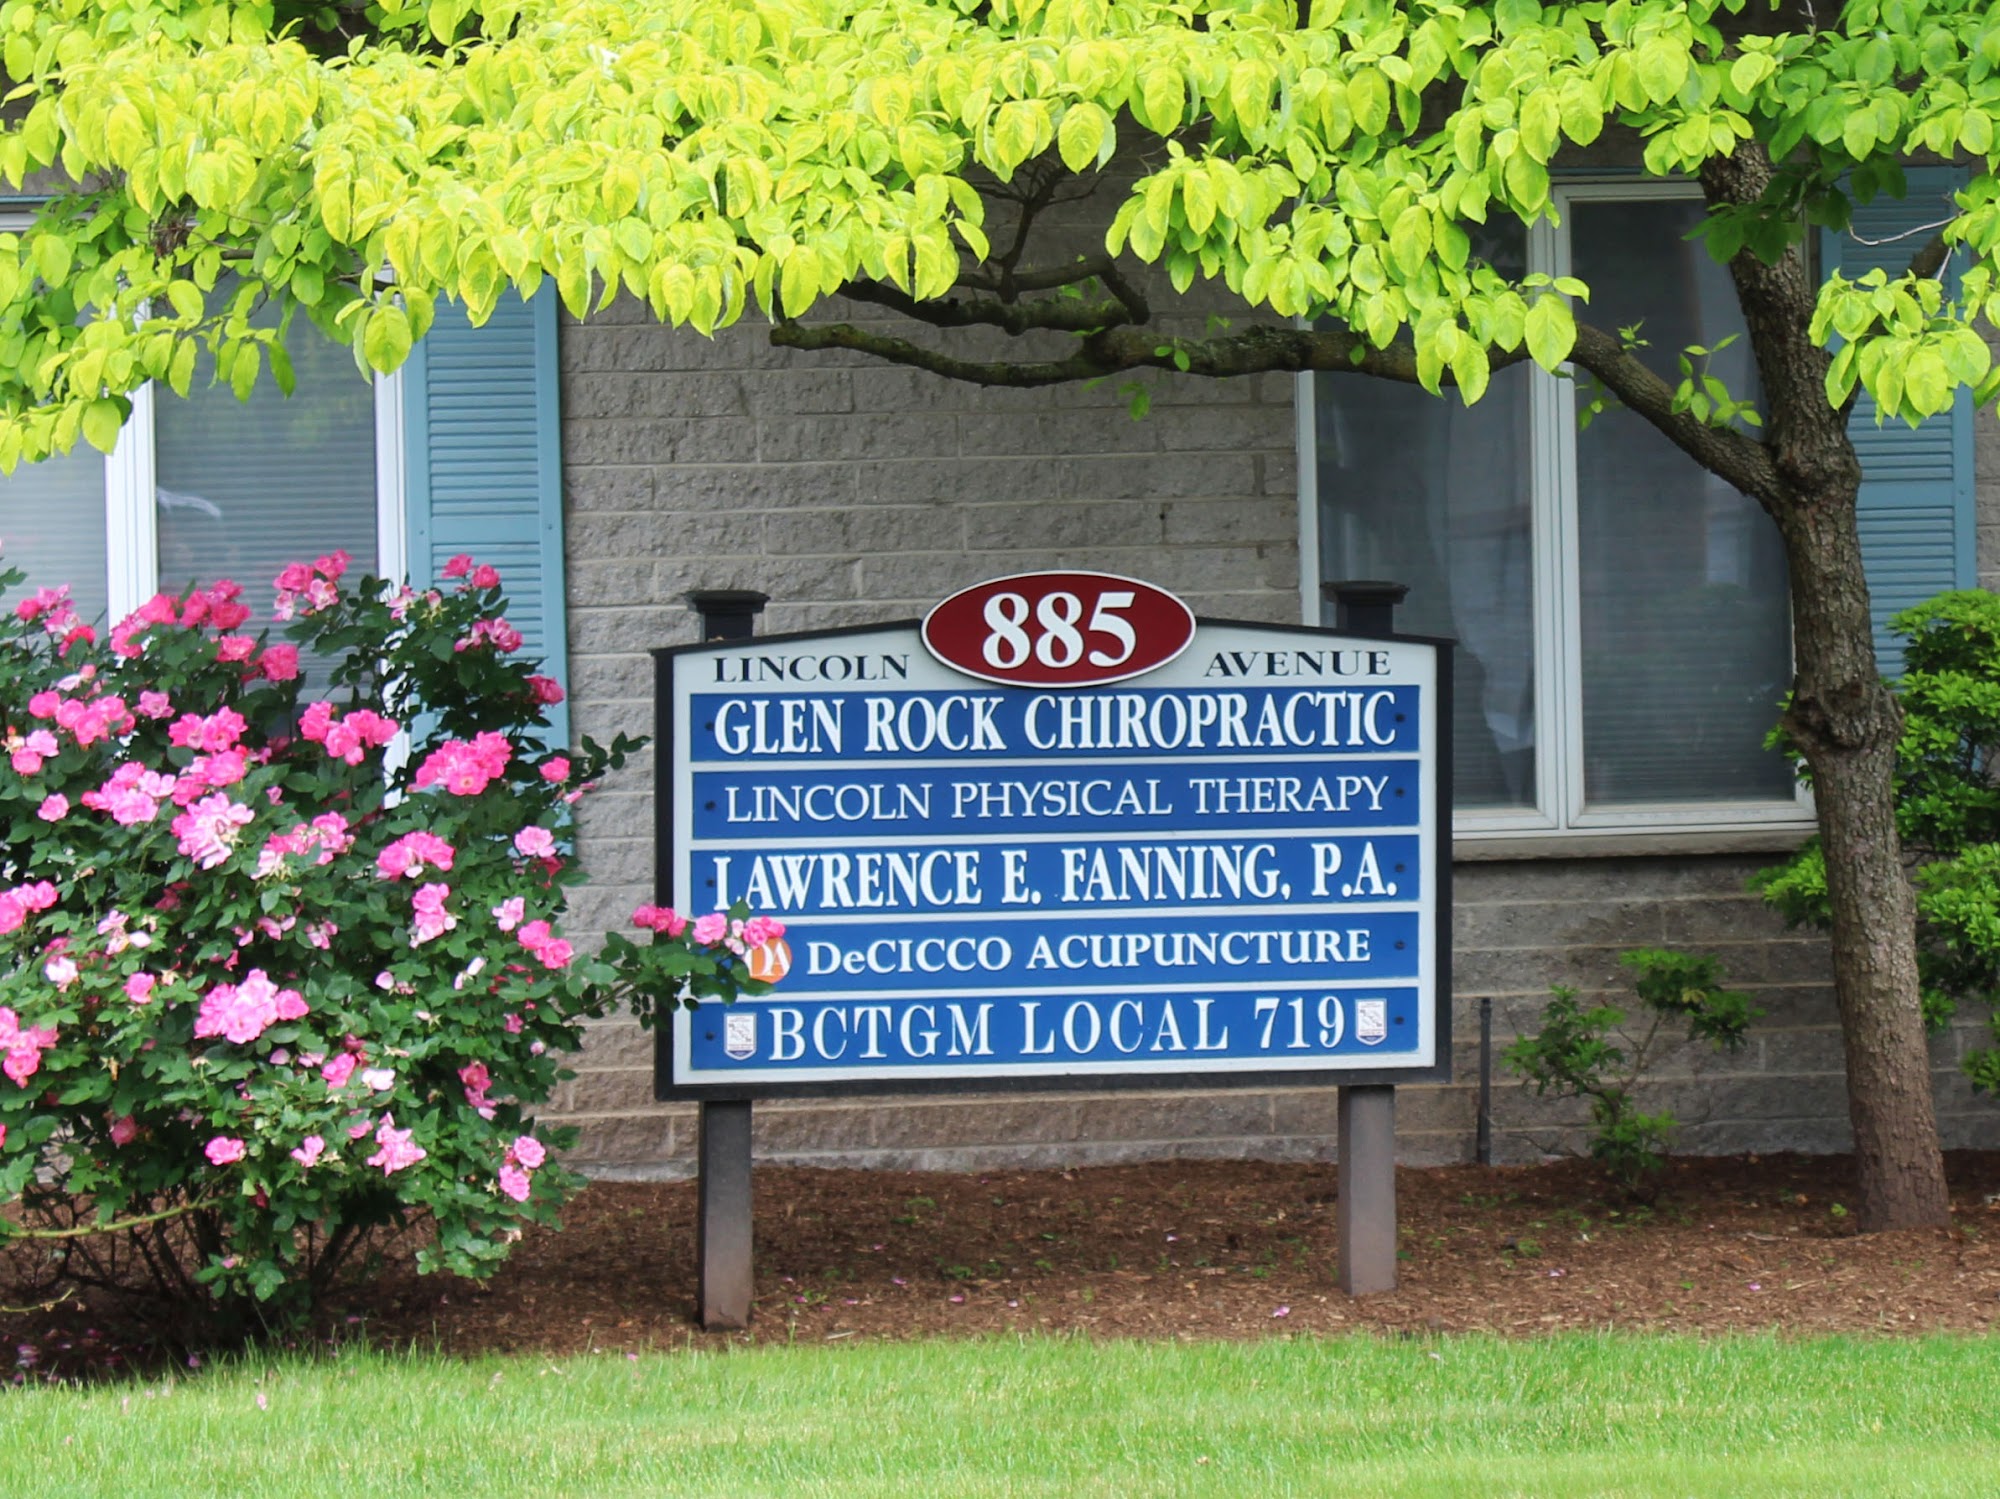 Glen Rock Chiropractic Center: Dr. David Czerminski